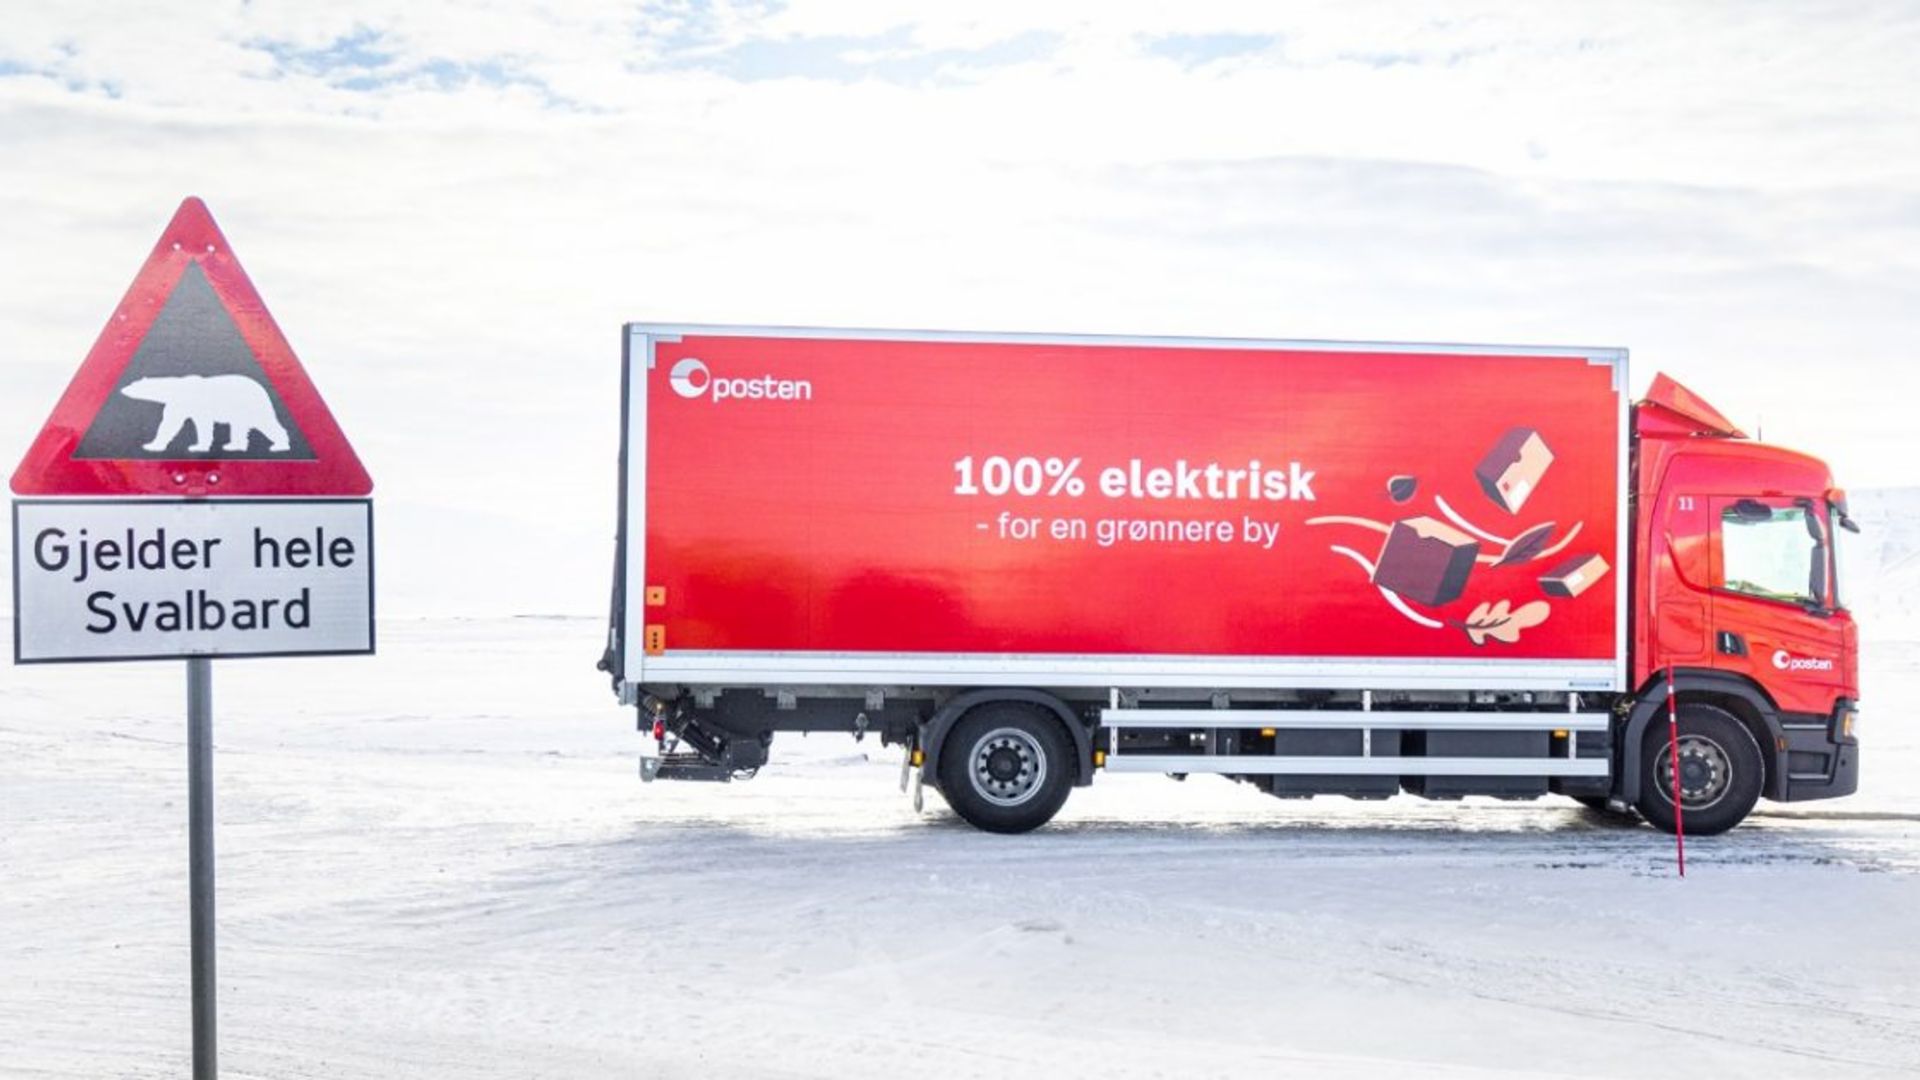 Der nördlichste elektrische Scania-Lkw der Welt